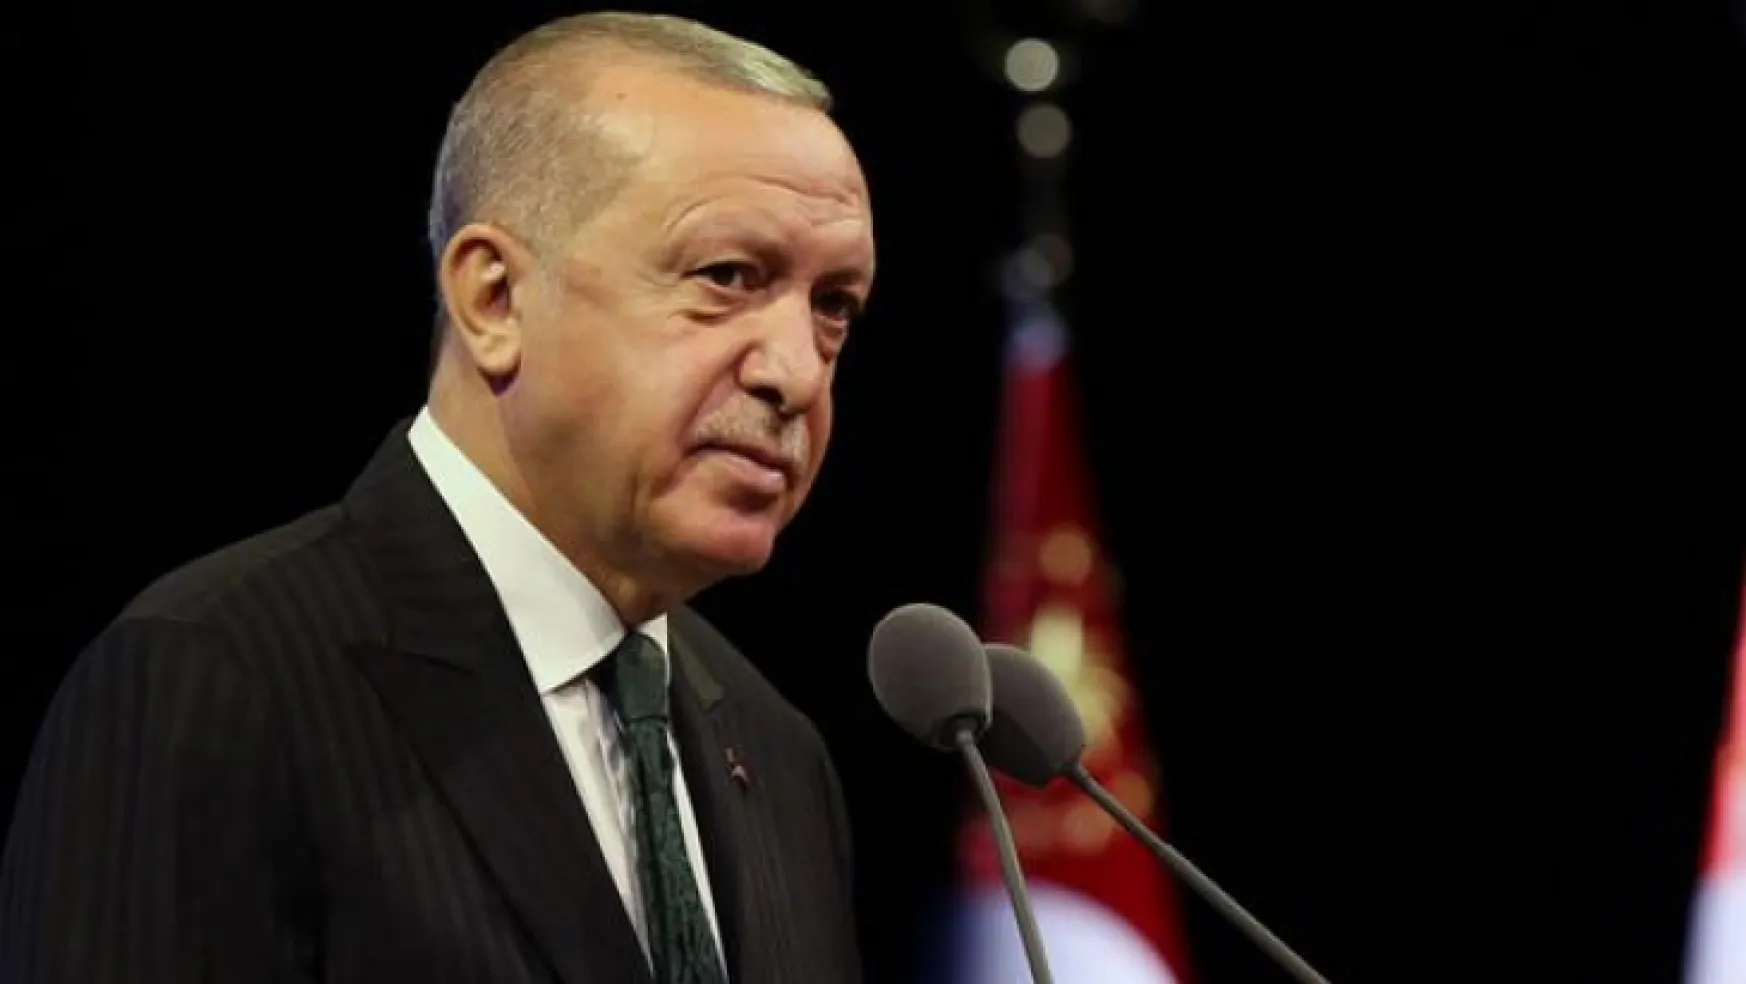 Erdoğan'dan Kılıçdaroğlu'na 'Kandil' yanıtı